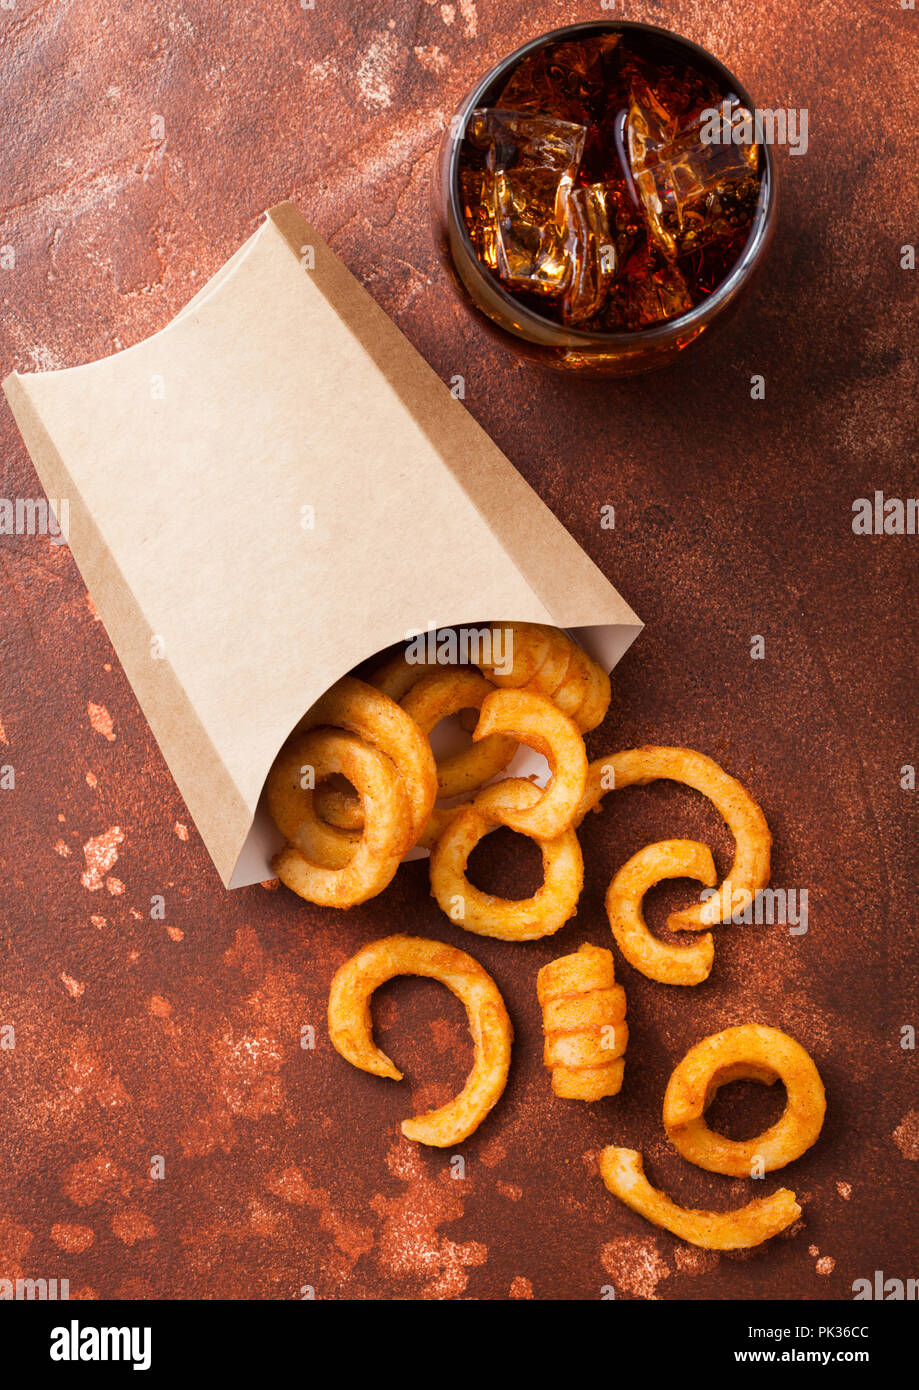 Curly Fries fast food snack en el contenedor de papel con un vaso de cola  en la cocina oxidada de fondo. La comida basura malsana Fotografía de stock  - Alamy